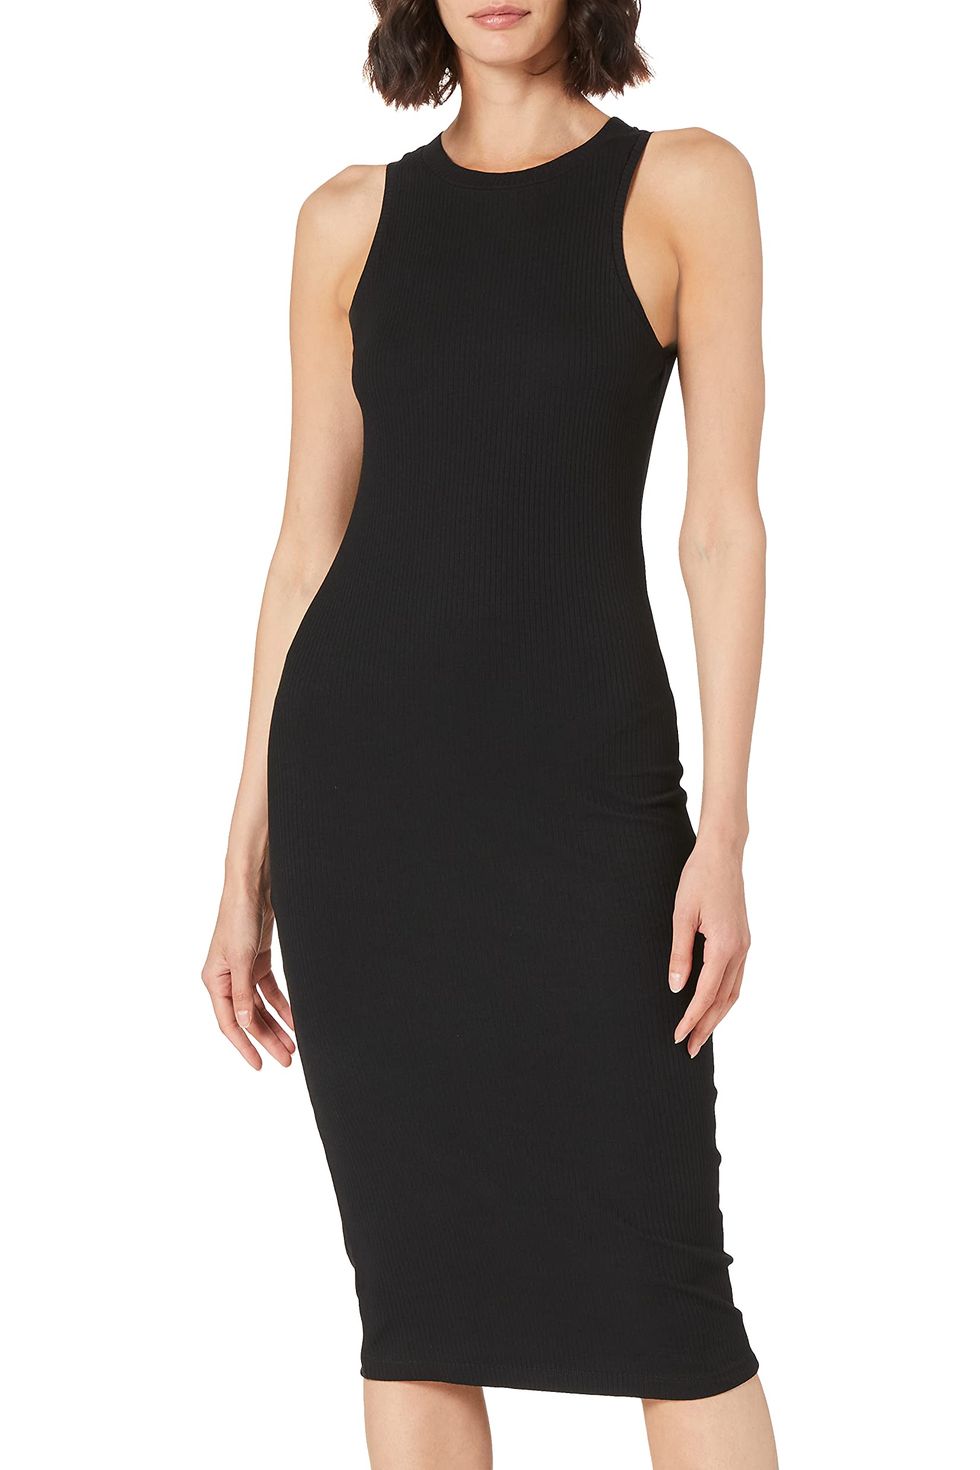 Vero Moda Women's Calf Dress VMA Noos, Black, S